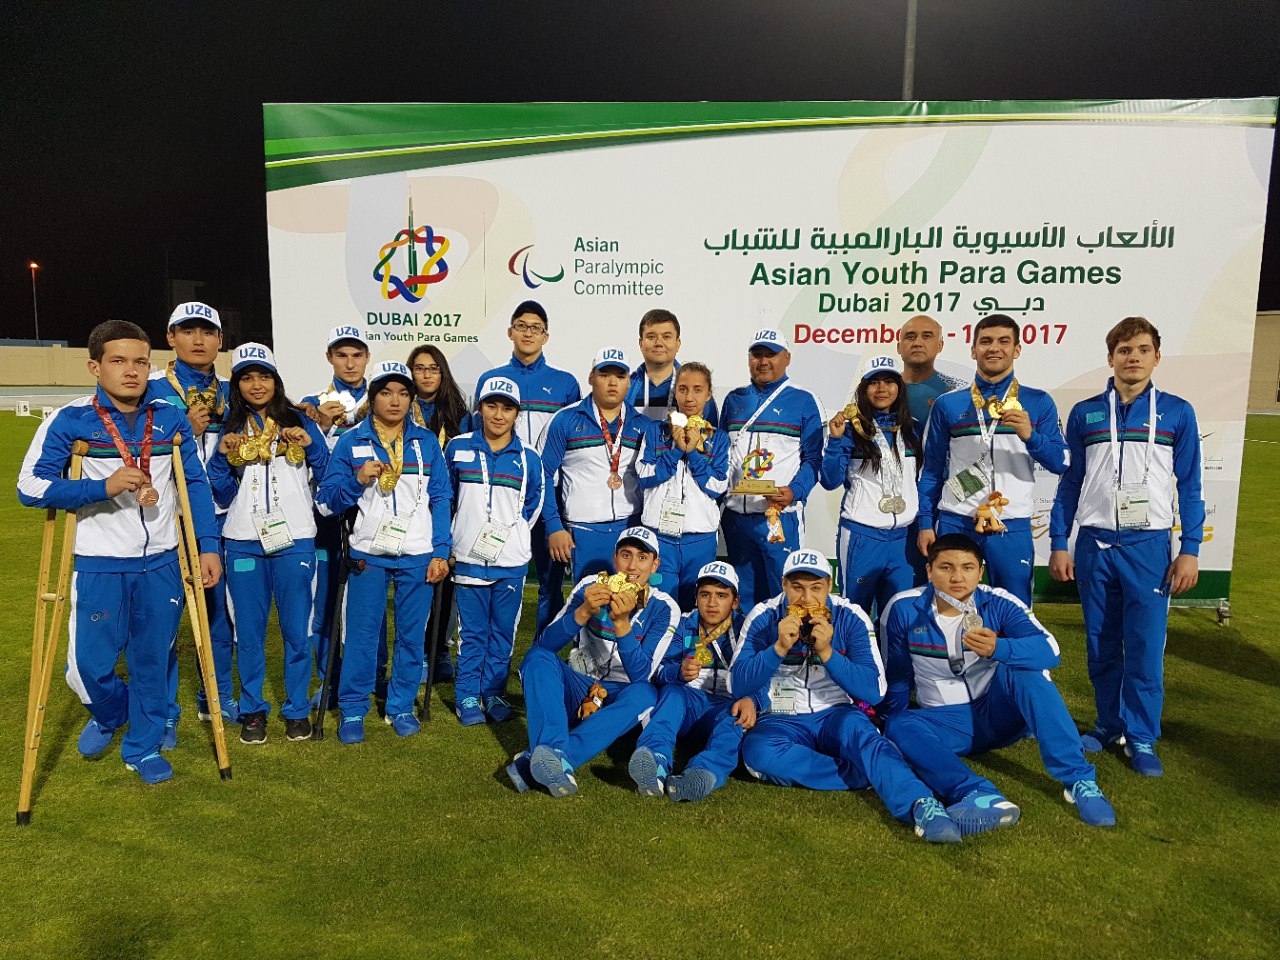 28 медалей на юношеских Азиатских Пара Играх завоевали спортсмены Узбекистана